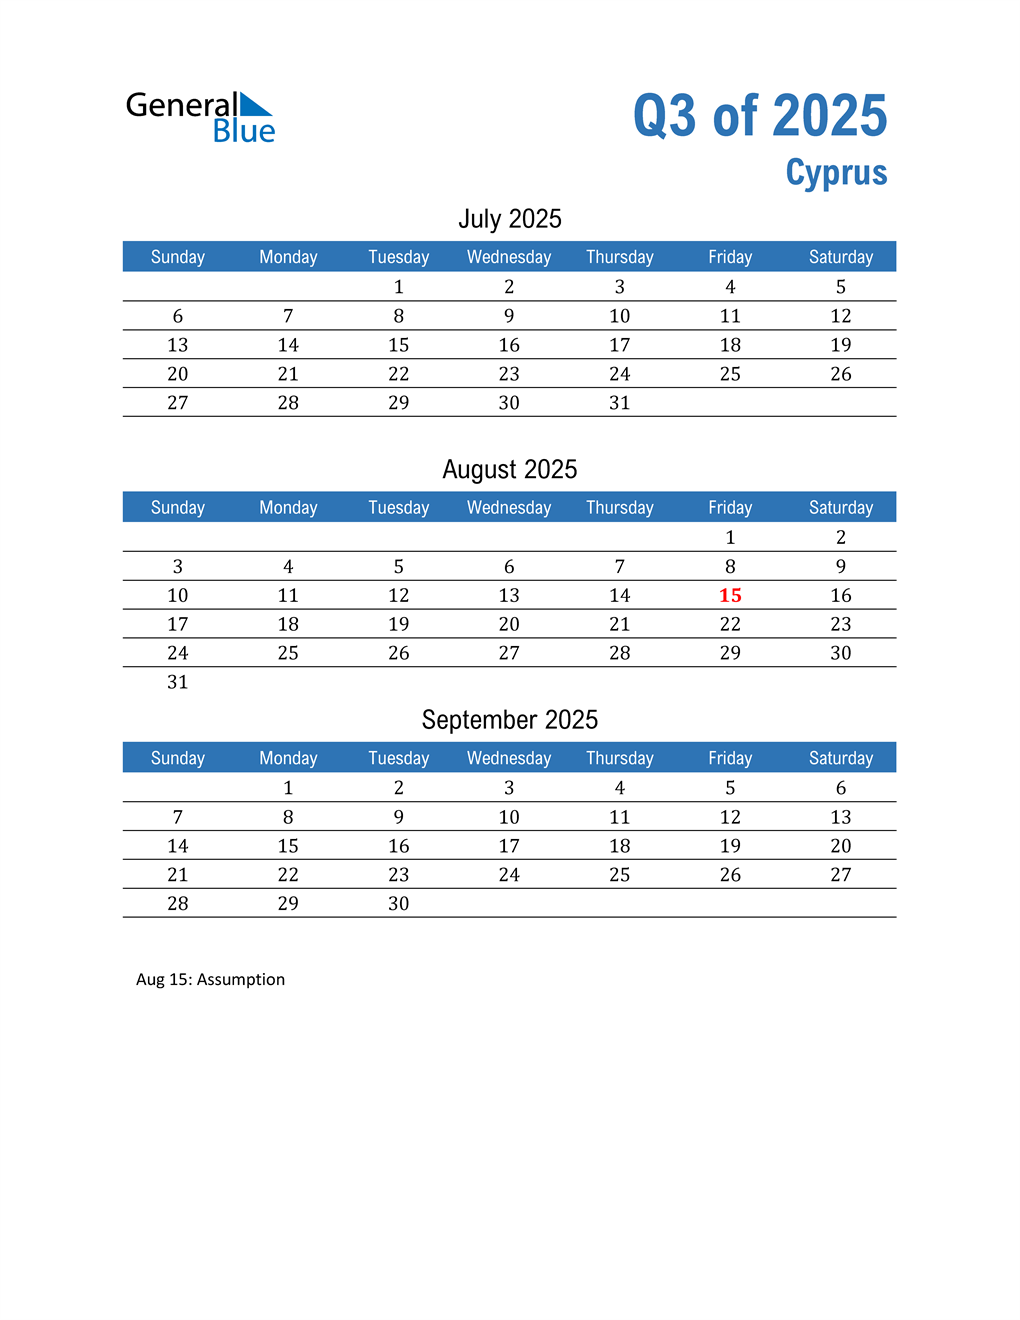  Cyprus 2025 Quarterly Calendar 